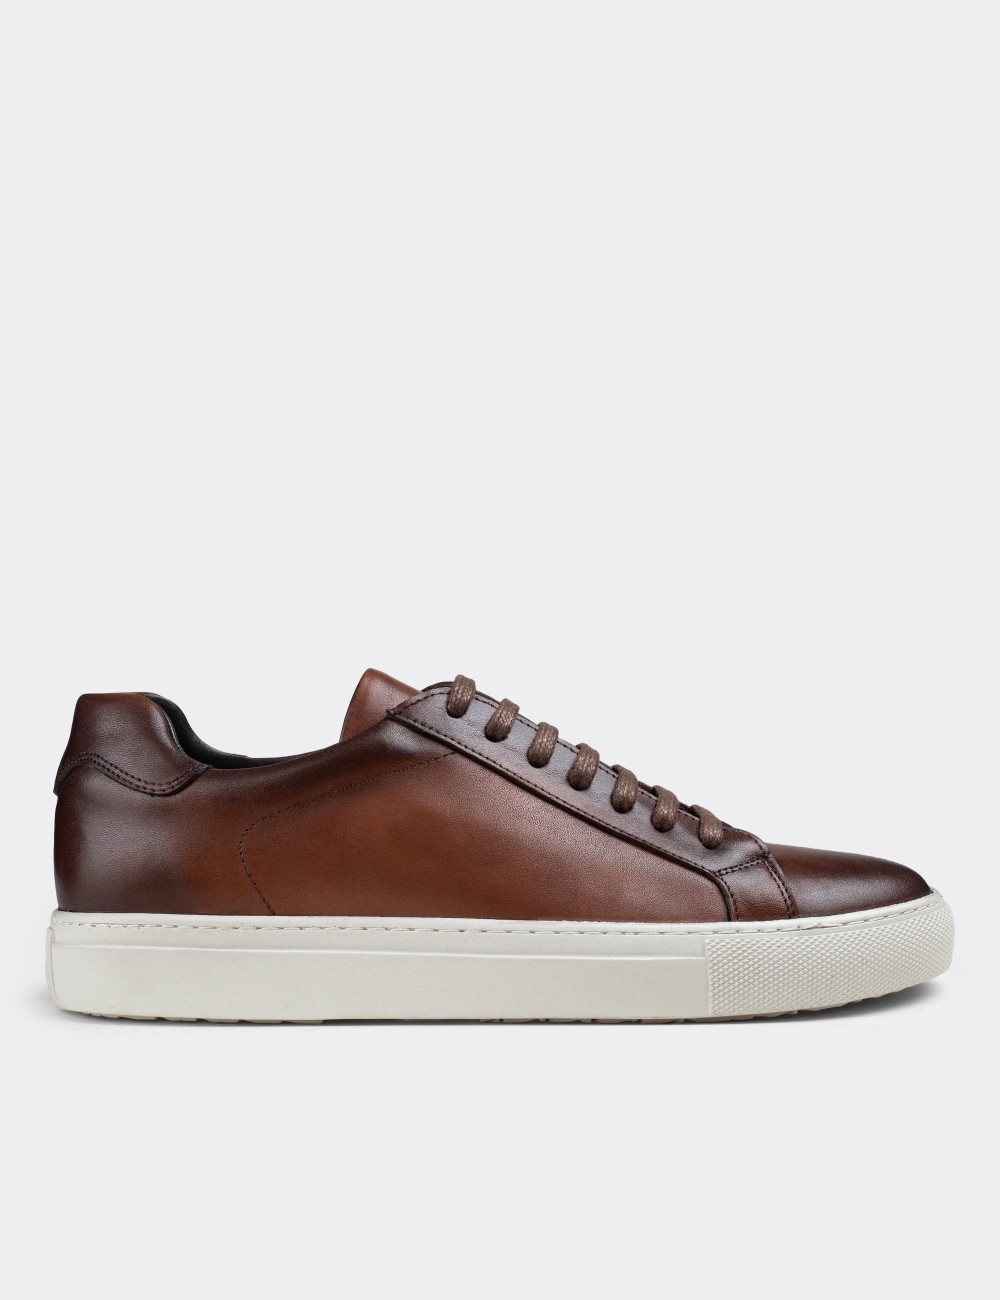 Tan  Leather Sneakers - 01681MTBAC02